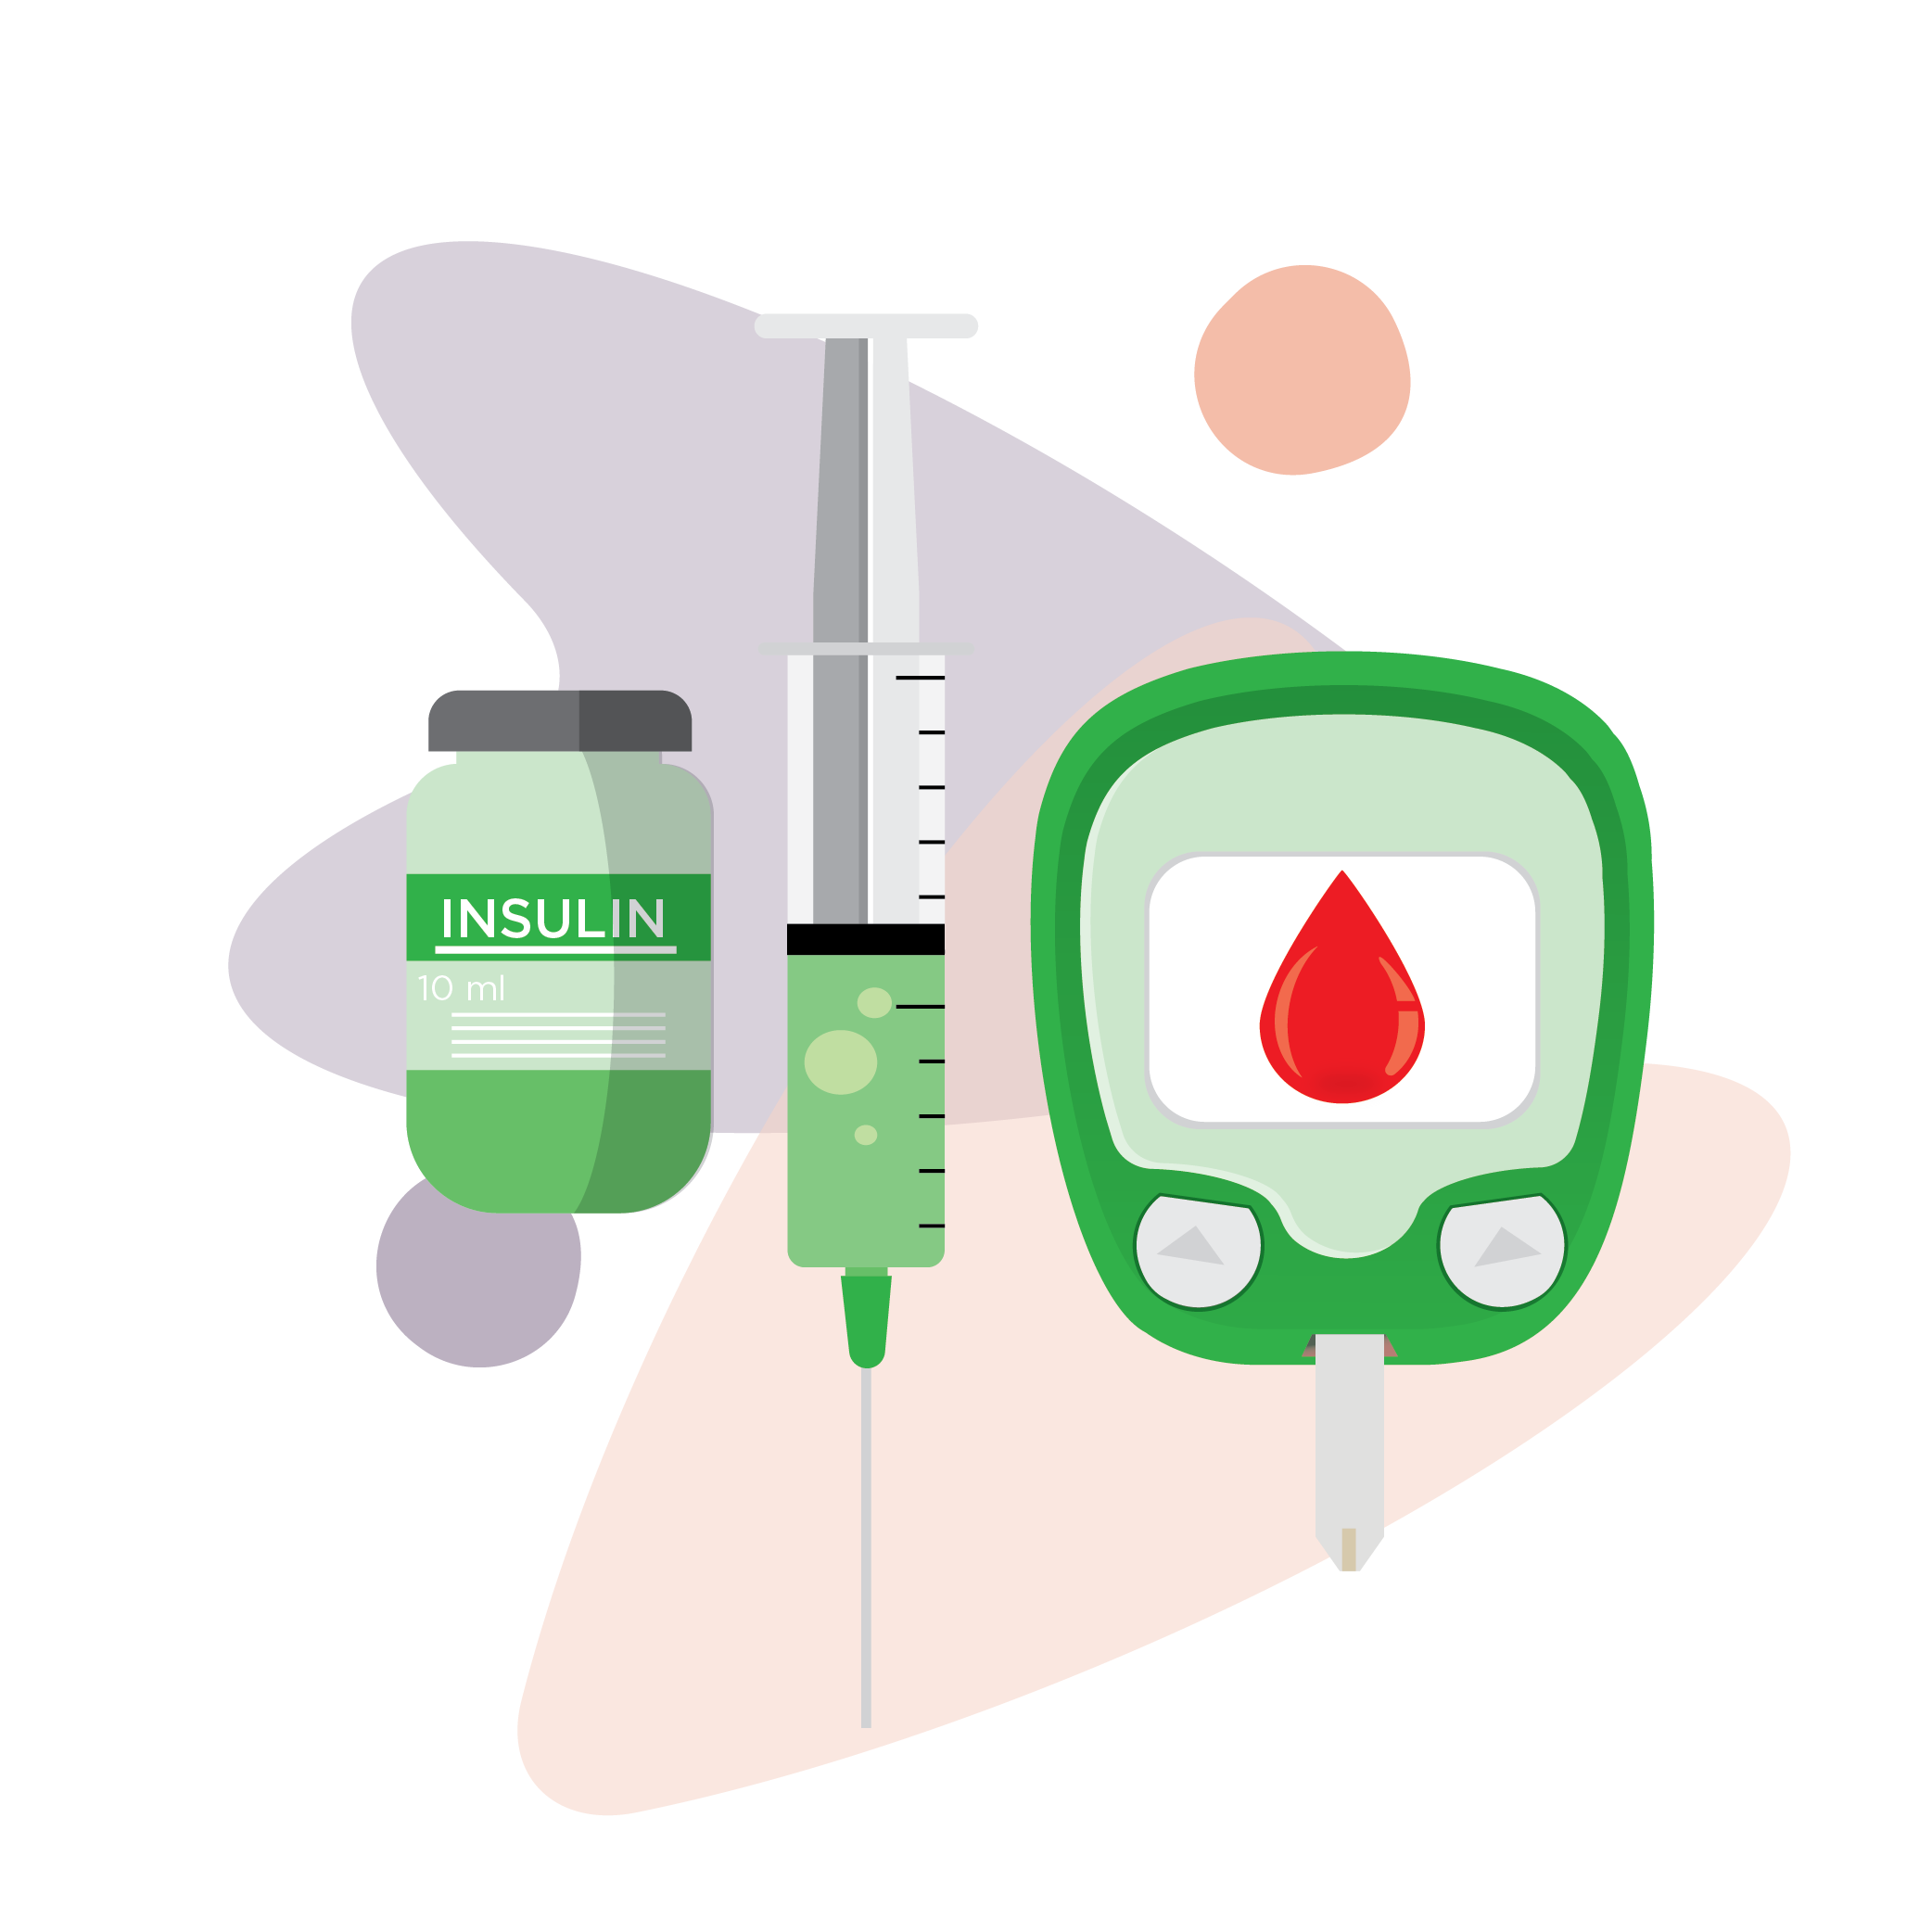 Illustration of insulin bottle, syringe and glucose meter or glucometer